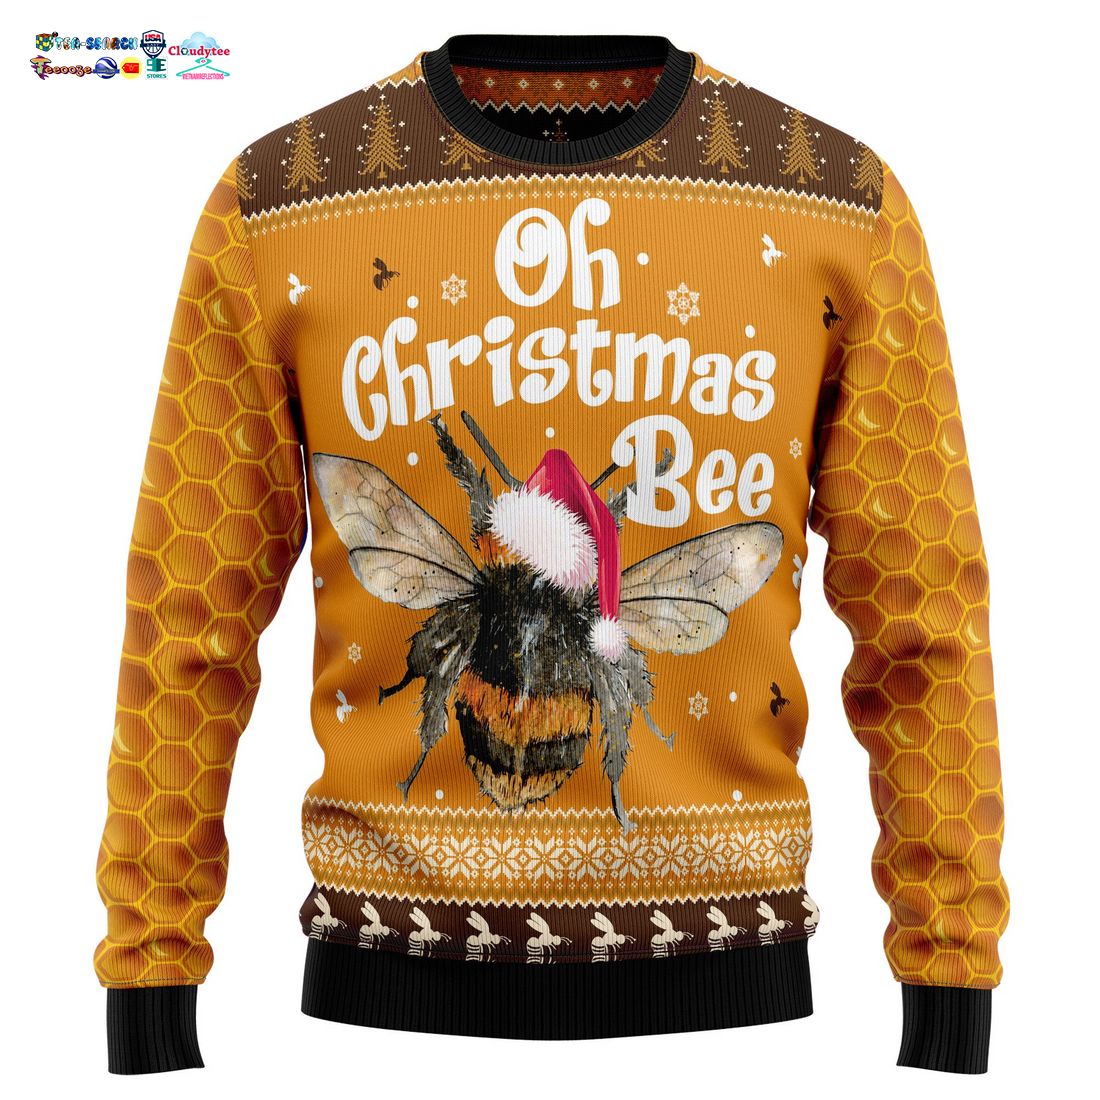 Oh Christmas Bee Ver 2 Ugly Christmas Sweater